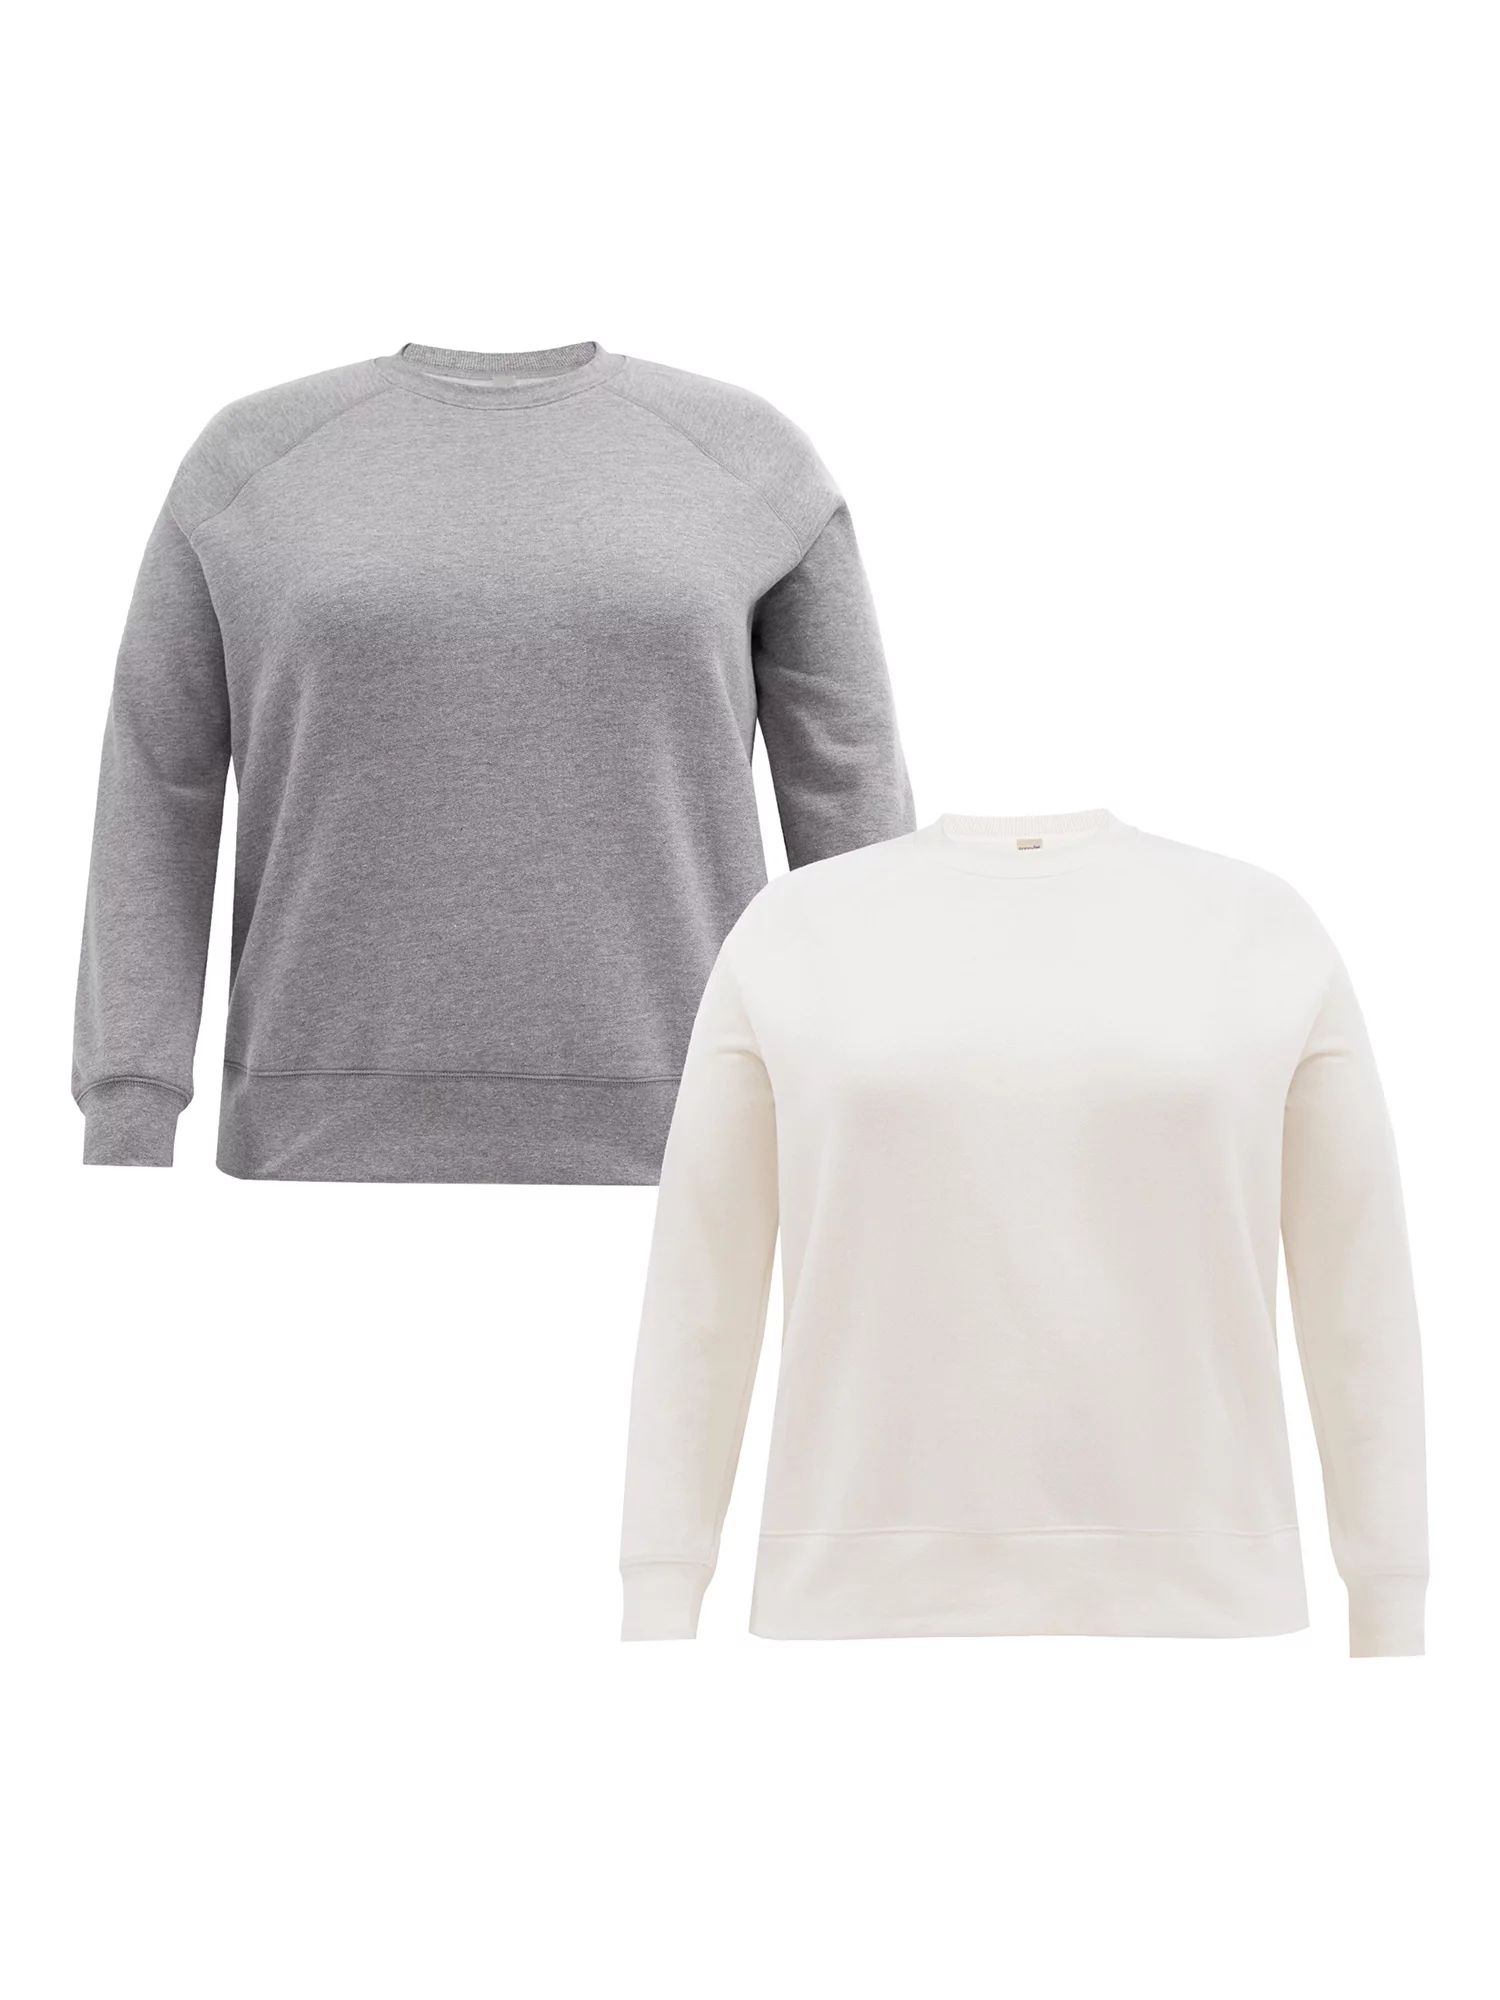 Terra & Sky Women's Plus Relaxed Fit Long Sleeve Fleece Sweatshirts, 2-Pack | Walmart (US)